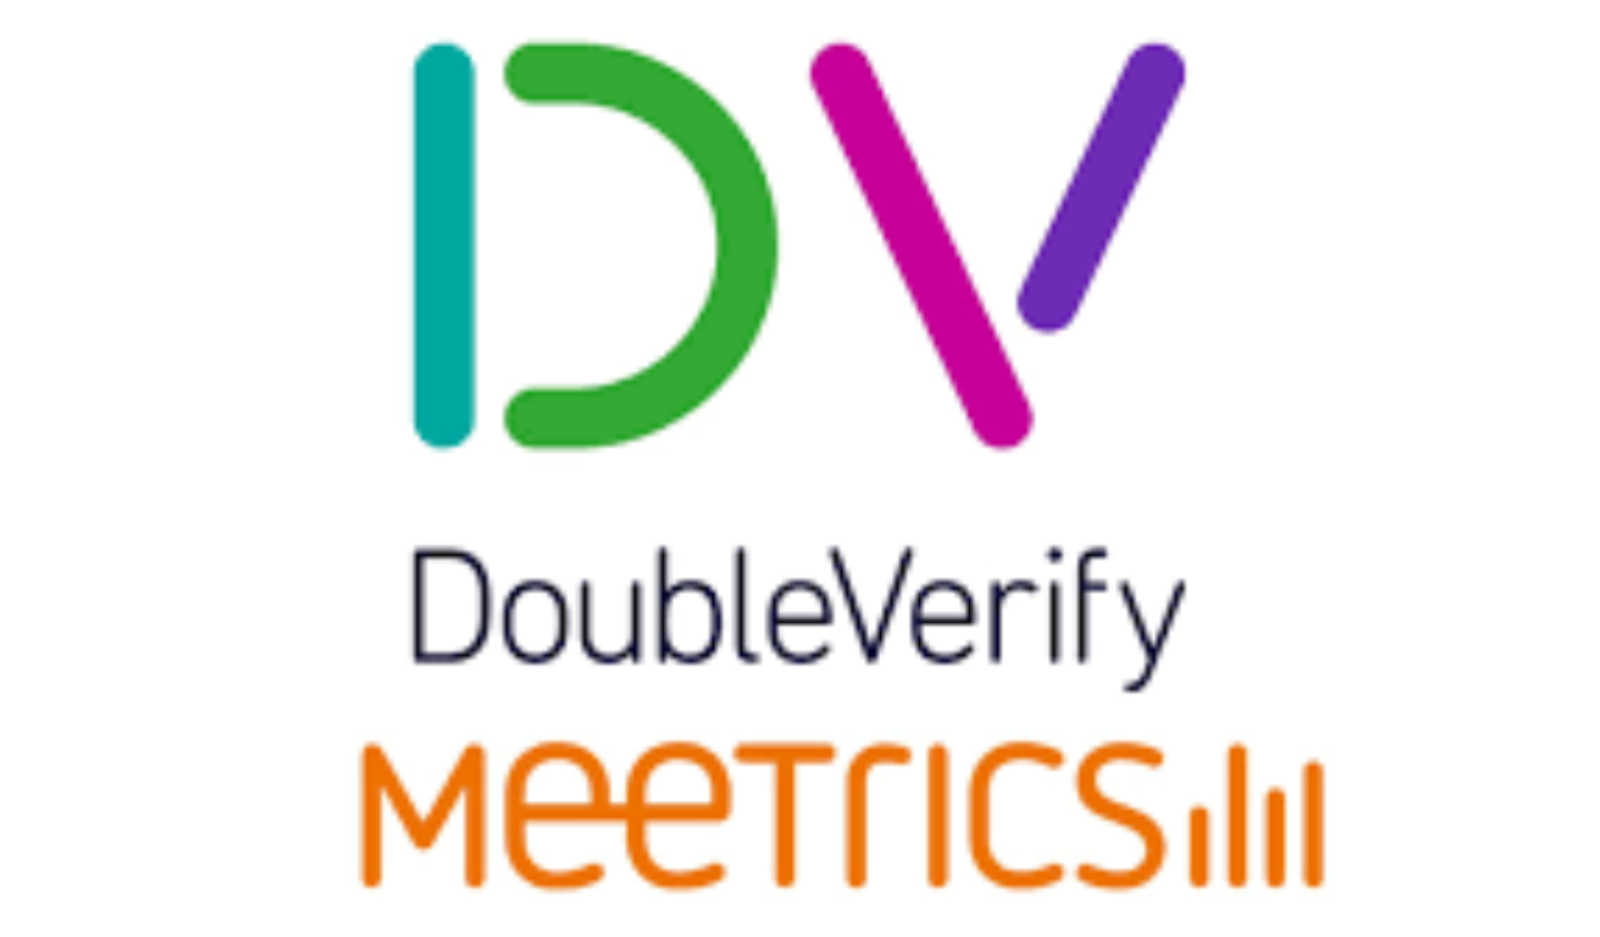 Double Verify获得基于EMEA的指标，扩展到全球